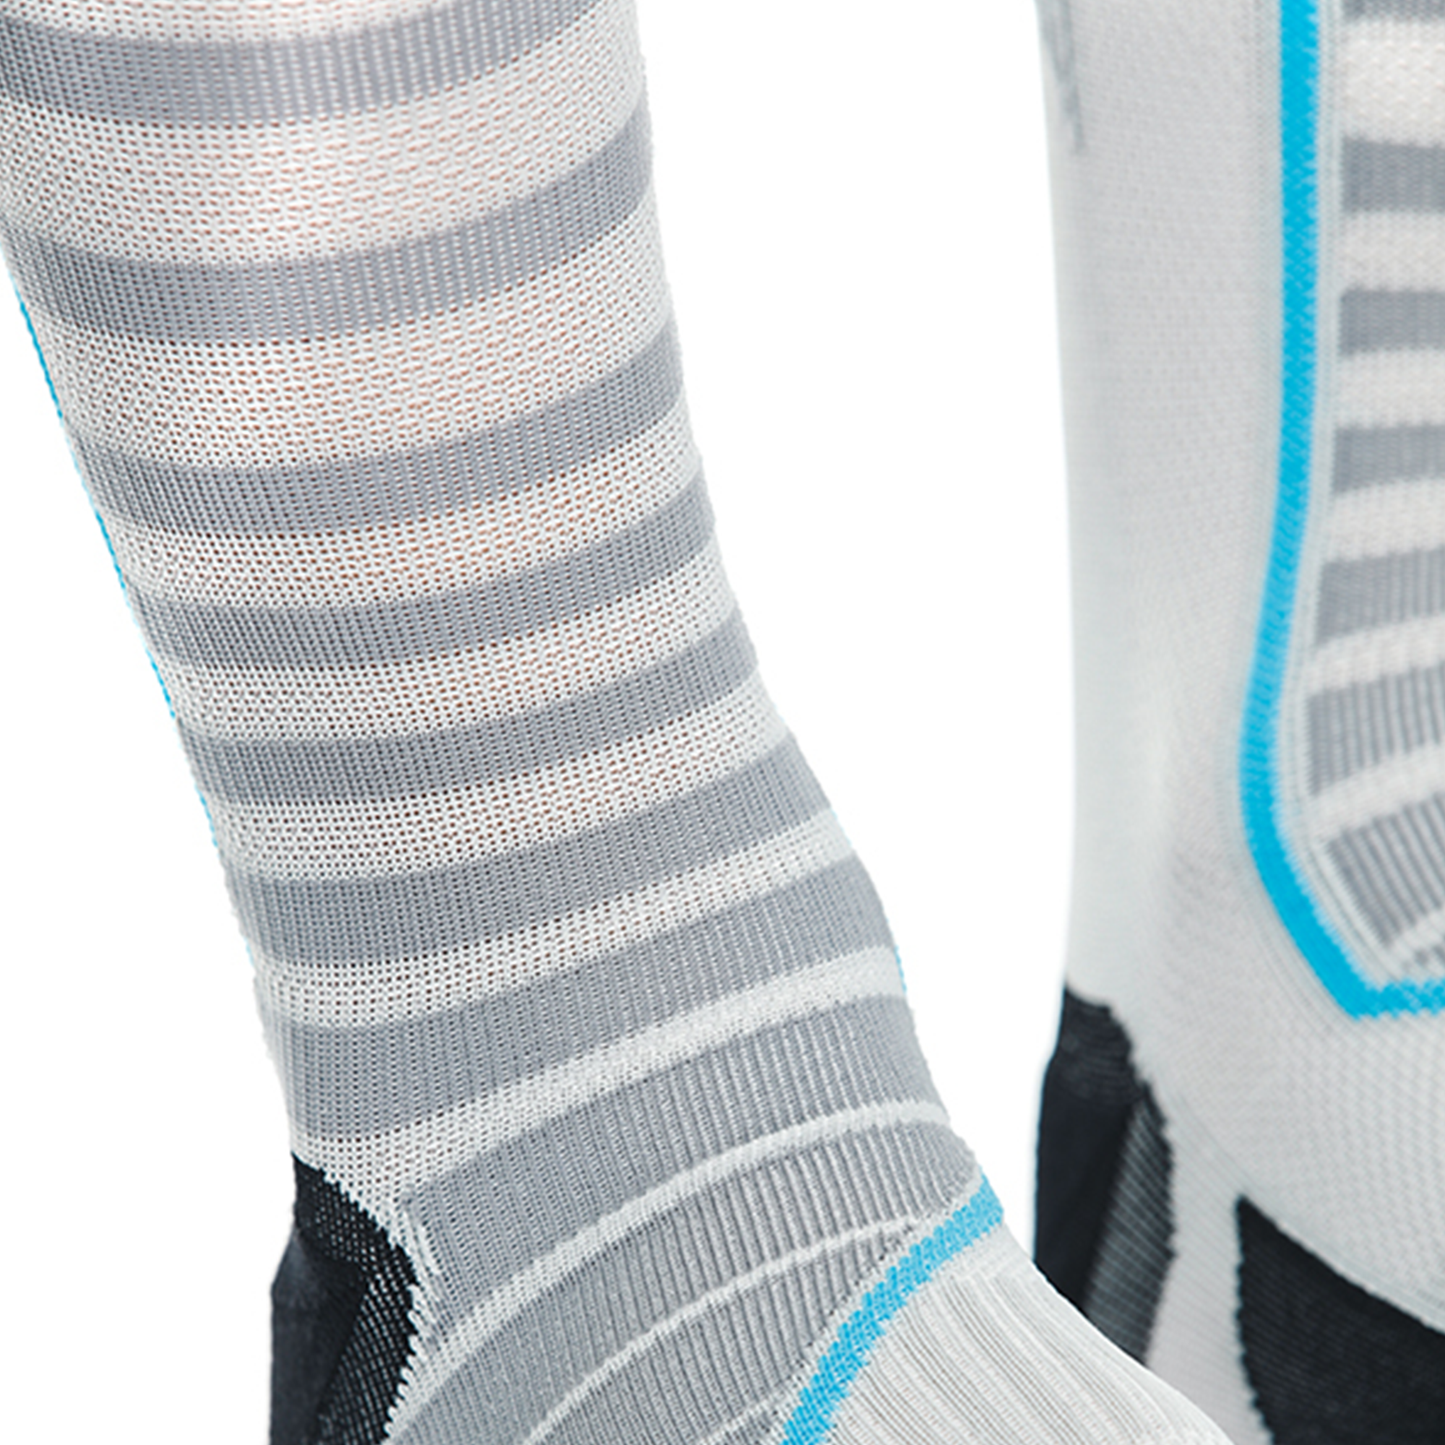 Dainese Dry Long Socks - Black/Blue (607)